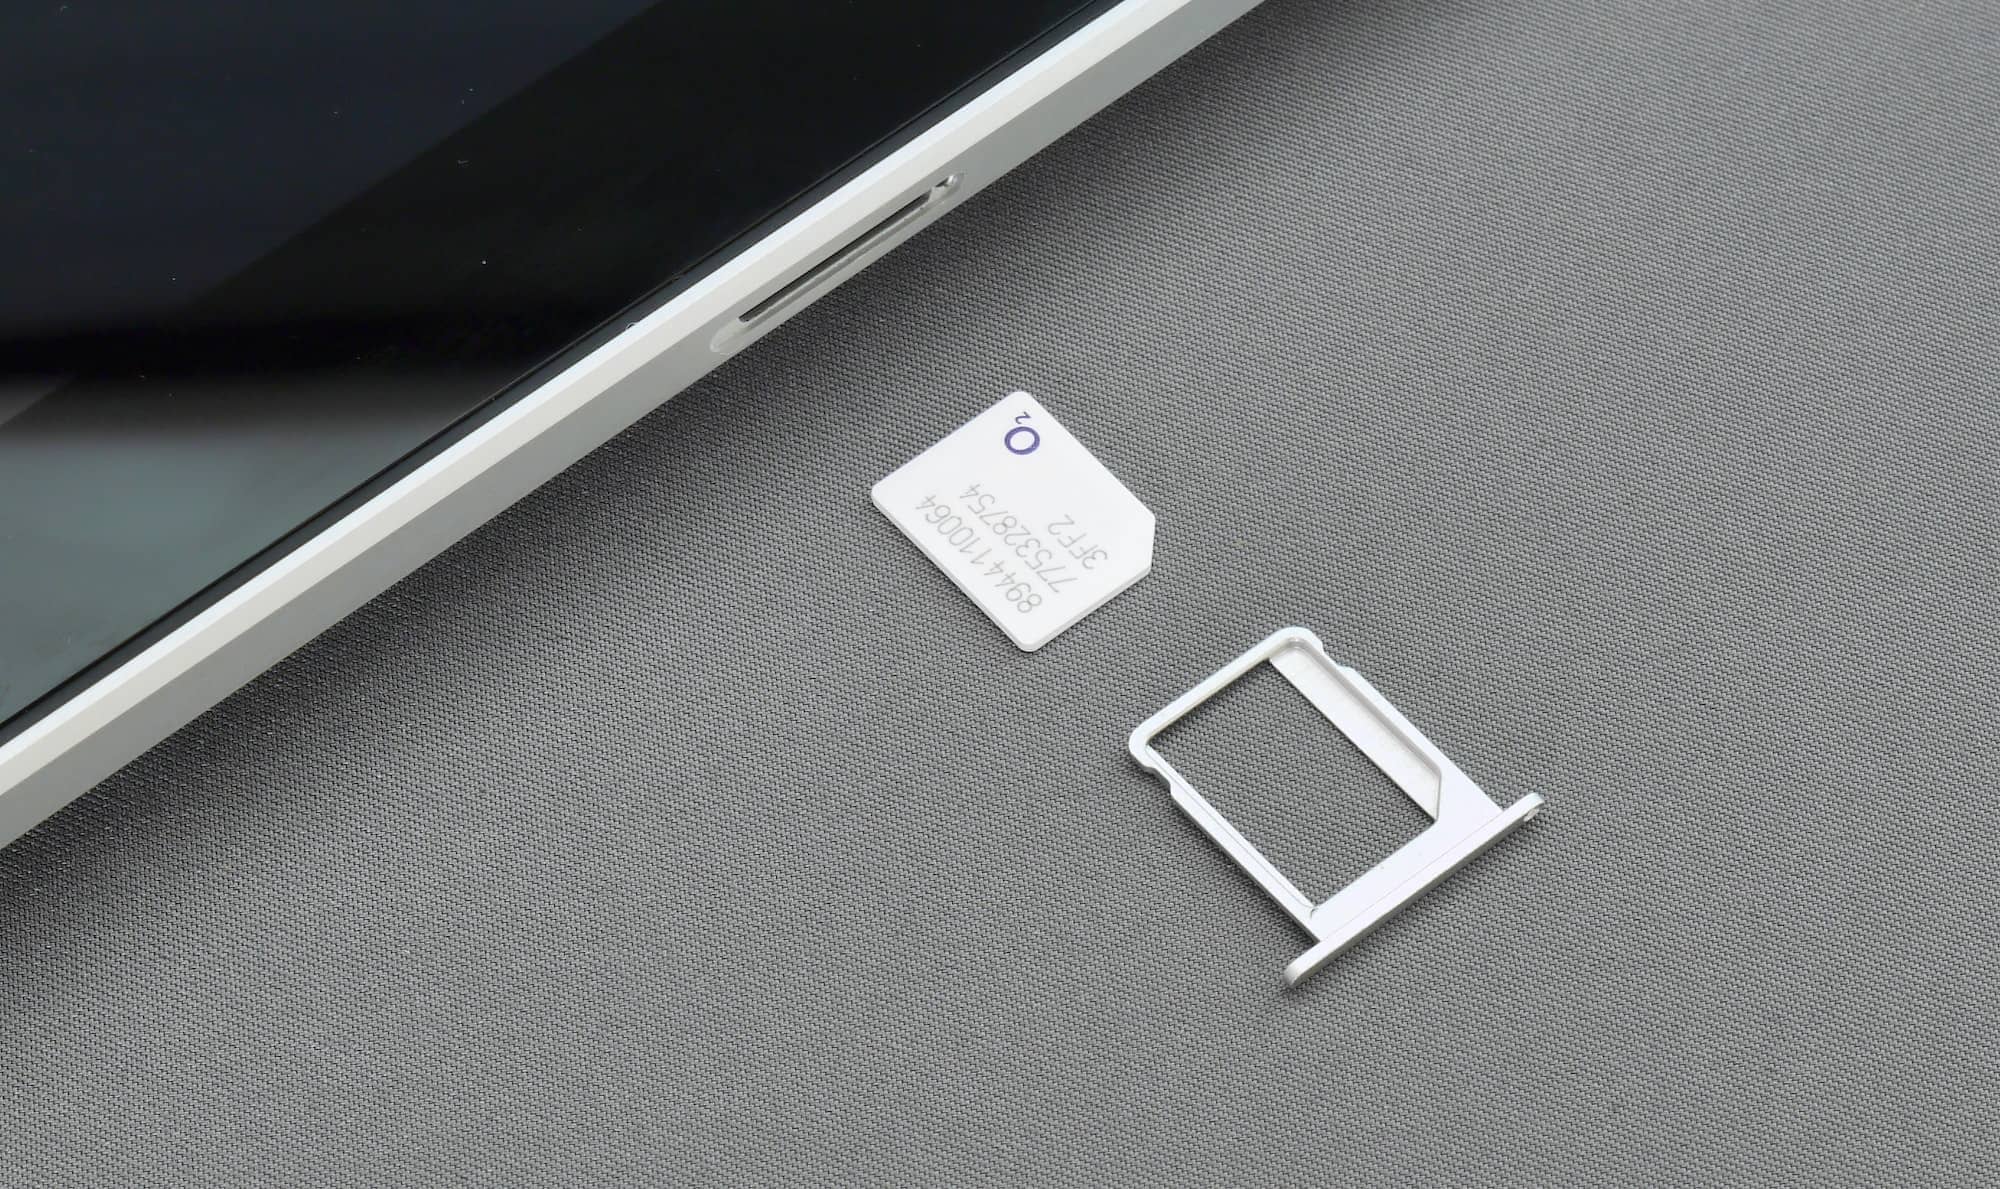 physical nano-SIM card